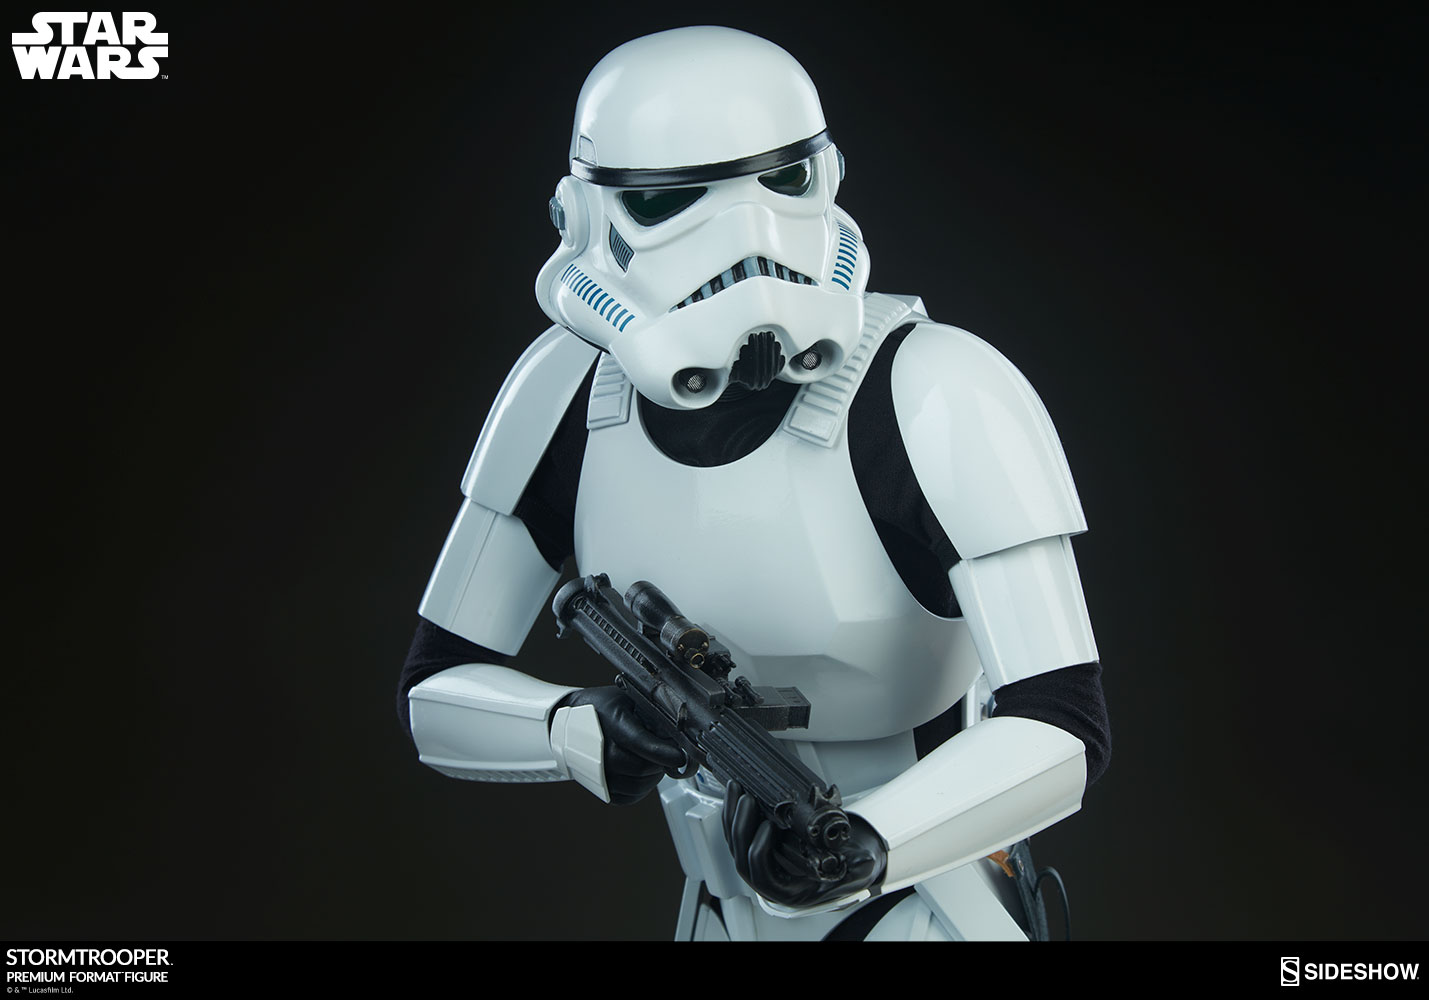 star wars stormtrooper tapete,spielzeug,action figur,3d modellierung,roboter,technologie